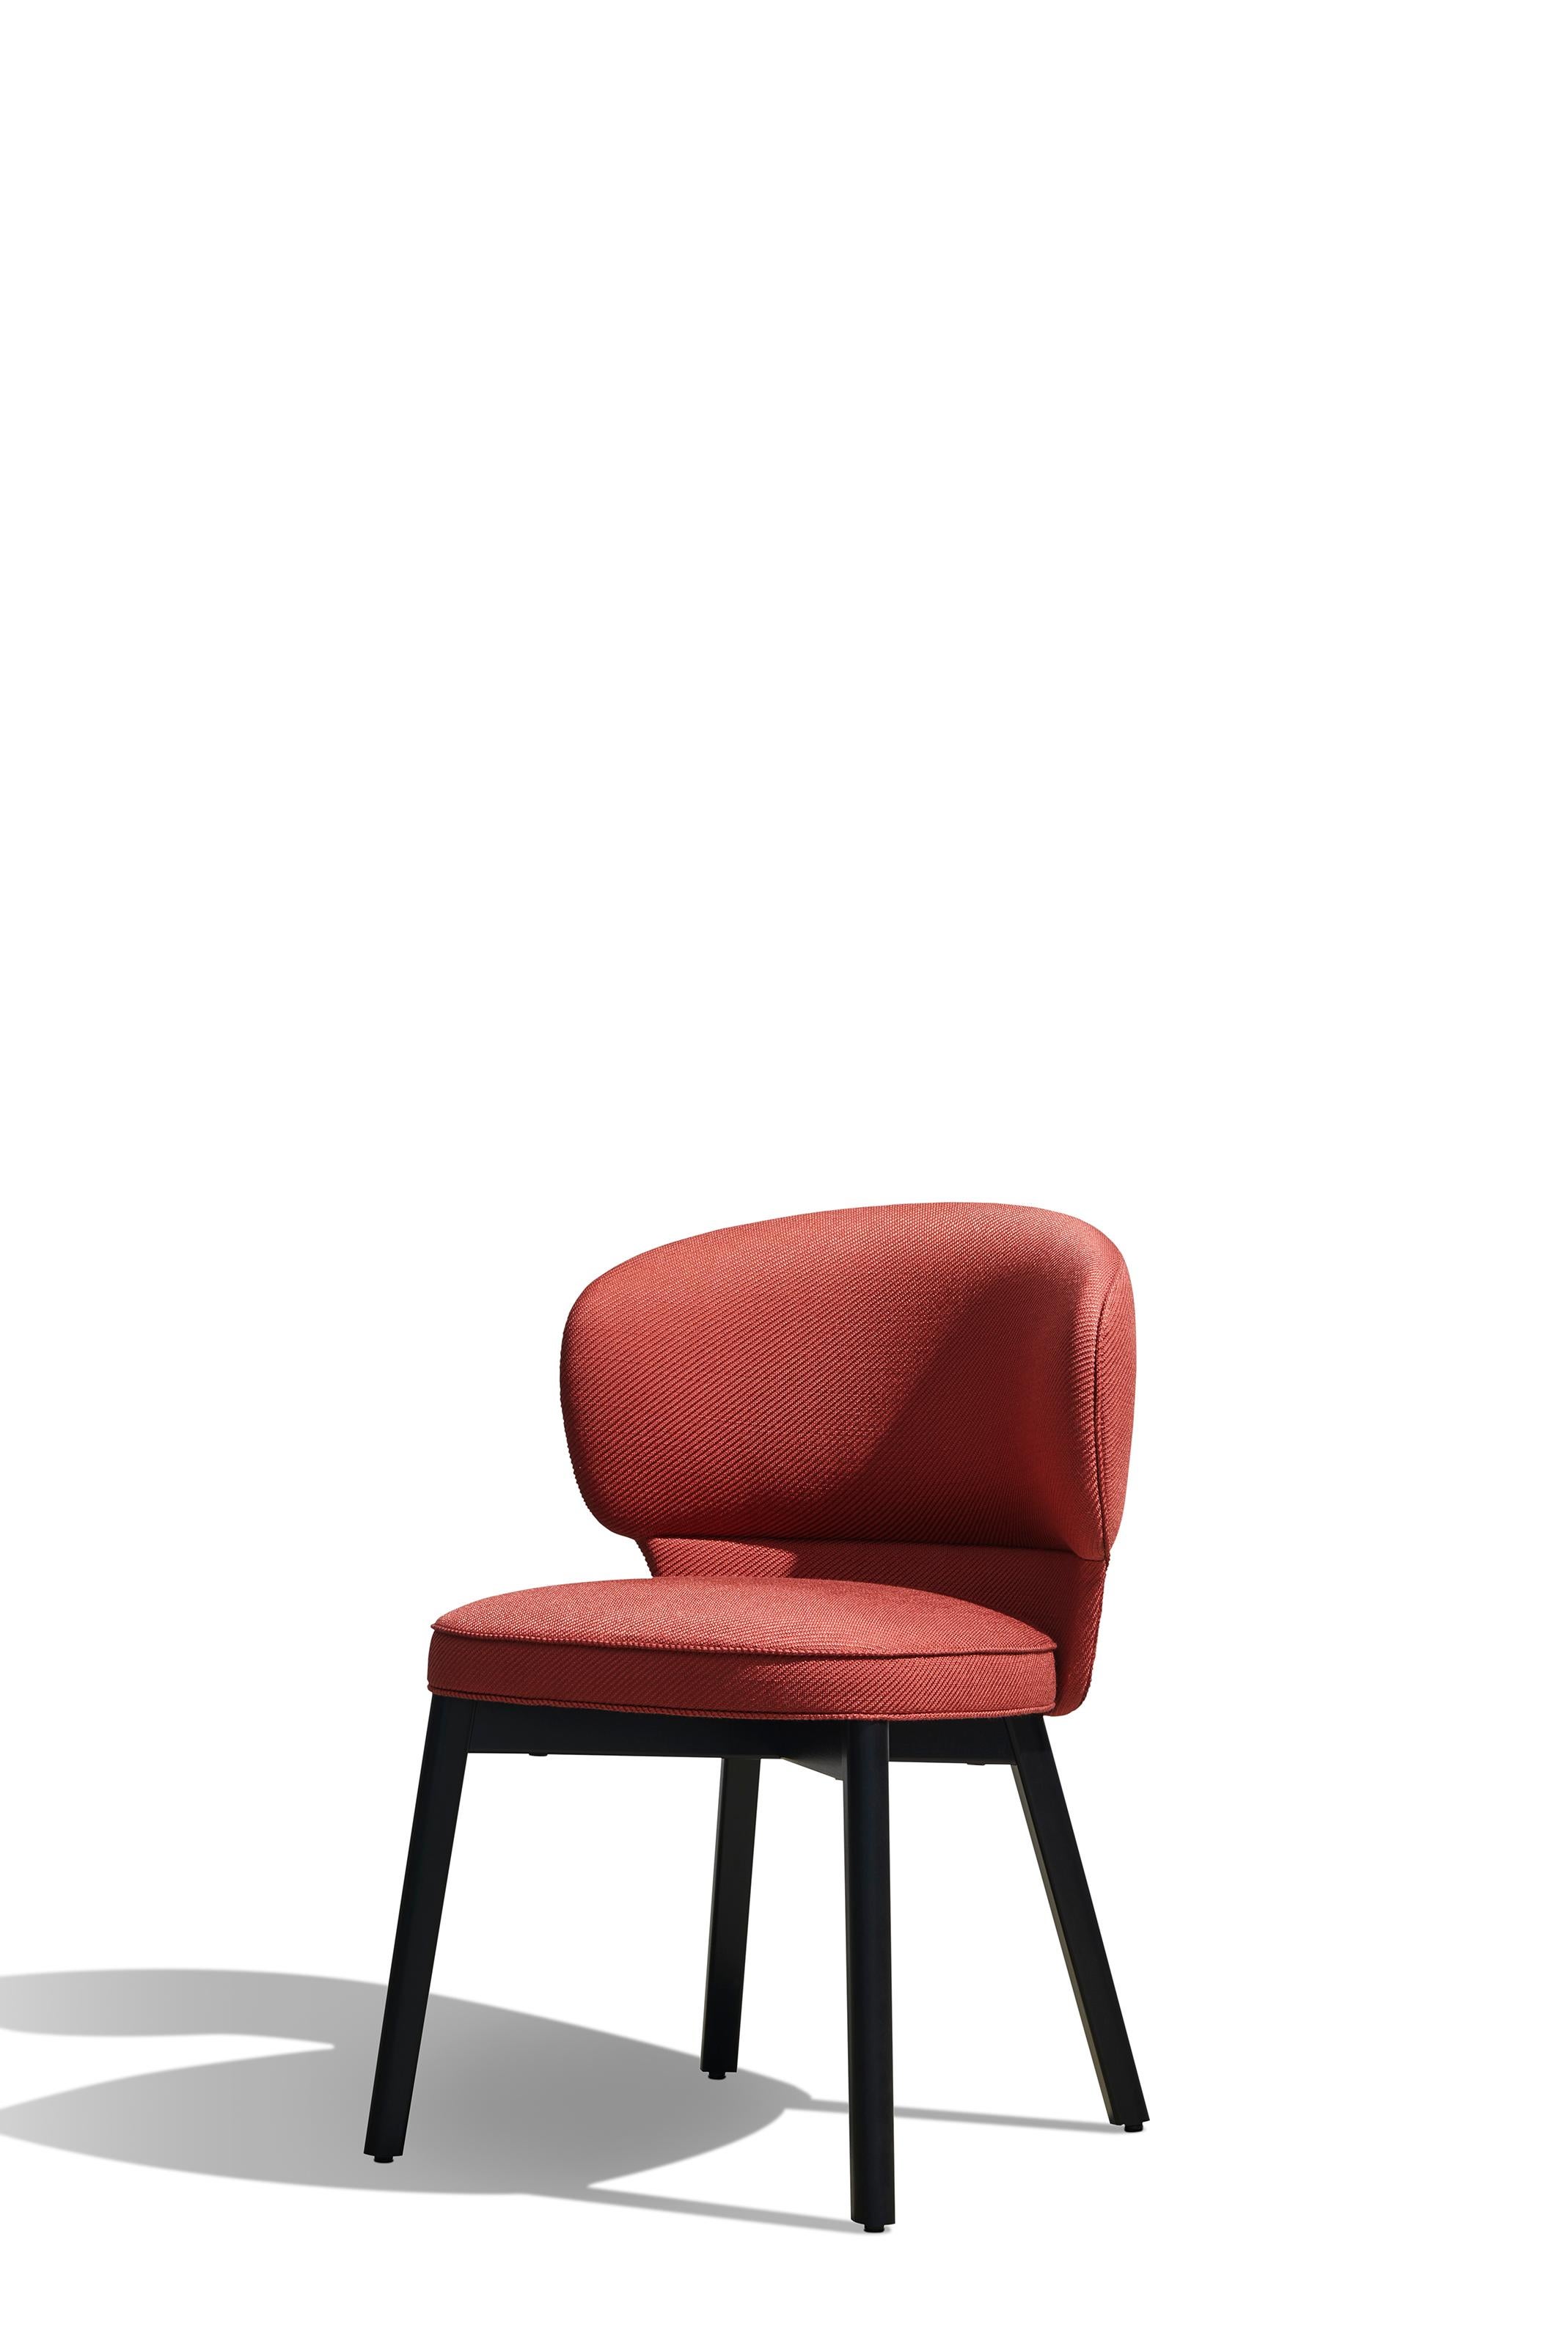 Contemporary Customizable Wittmann Morton Chair by  Sebastian Herkner  For Sale